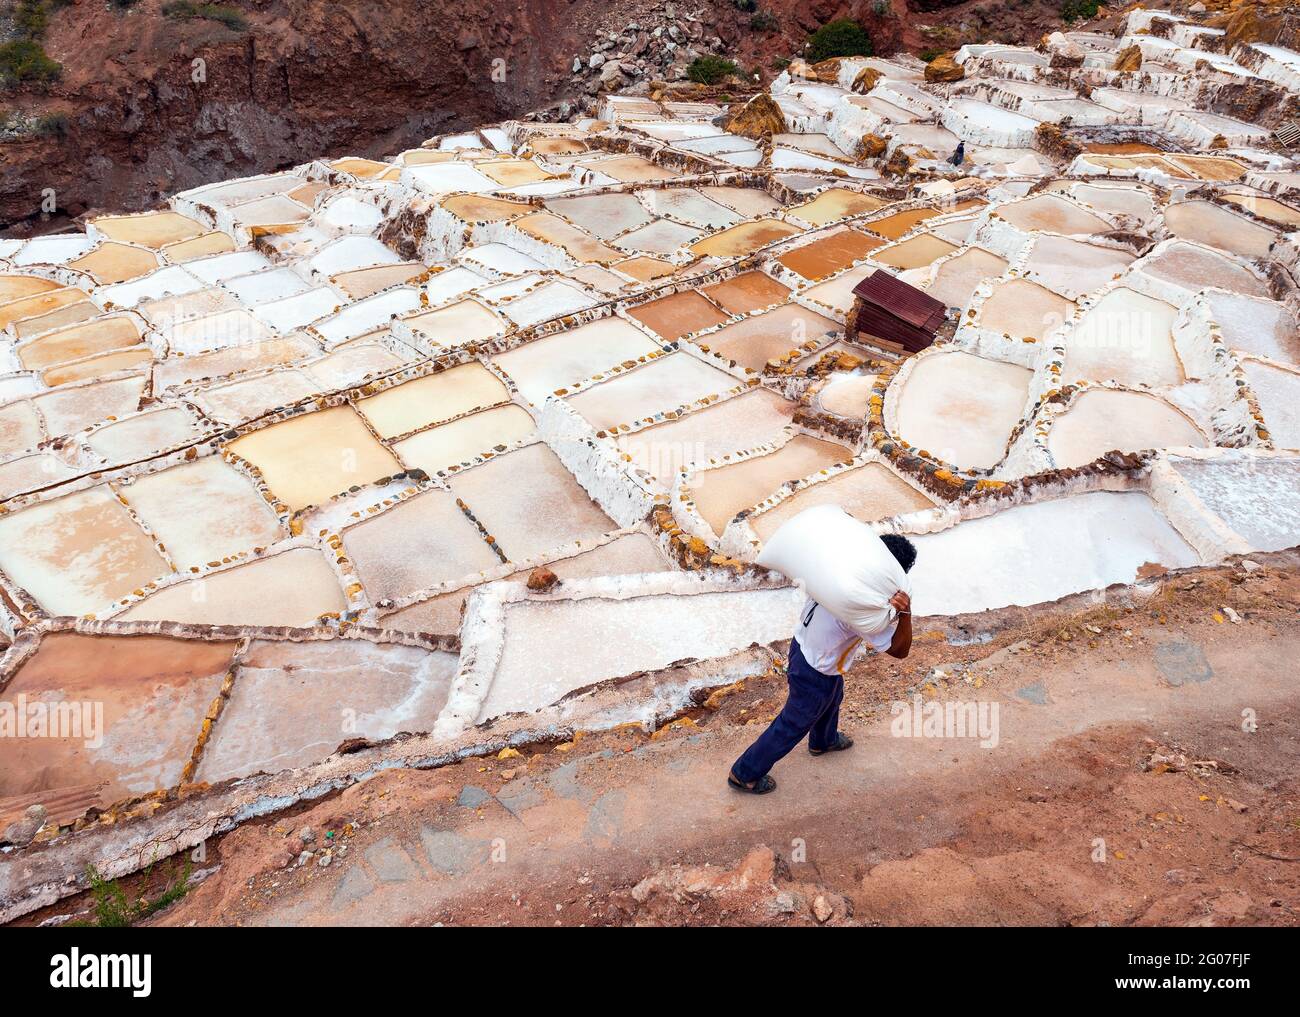 Peruanischer Salzporter auf den Salzterrassen von Maras mit großen Säcken Salz, Cusco, Peru. Stockfoto